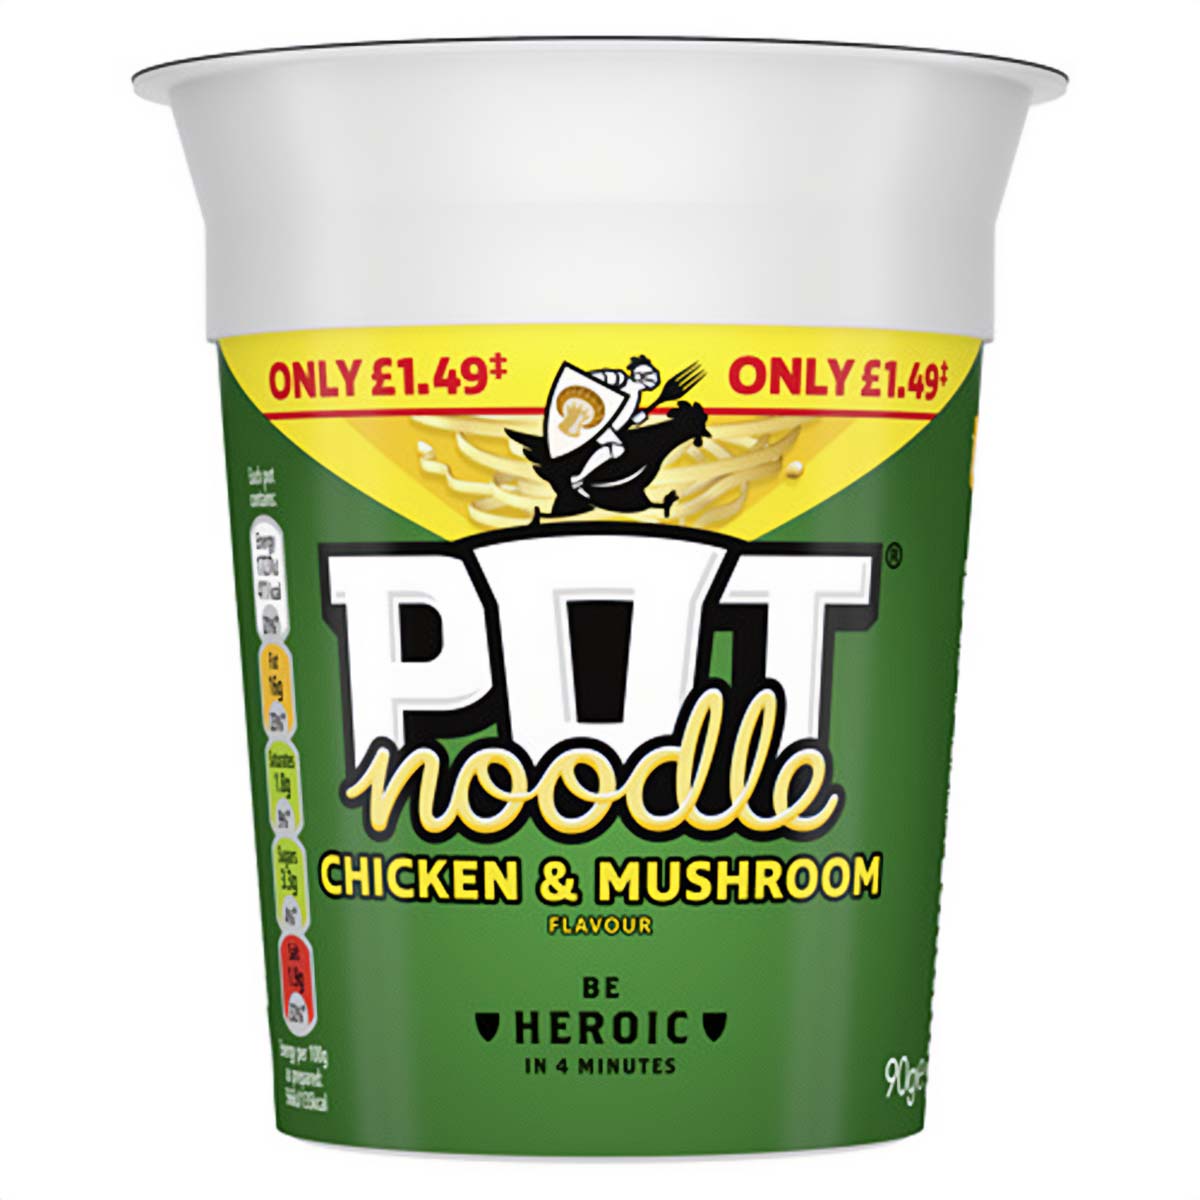 Pot Noodle - Chicken & Mushroom - 90g